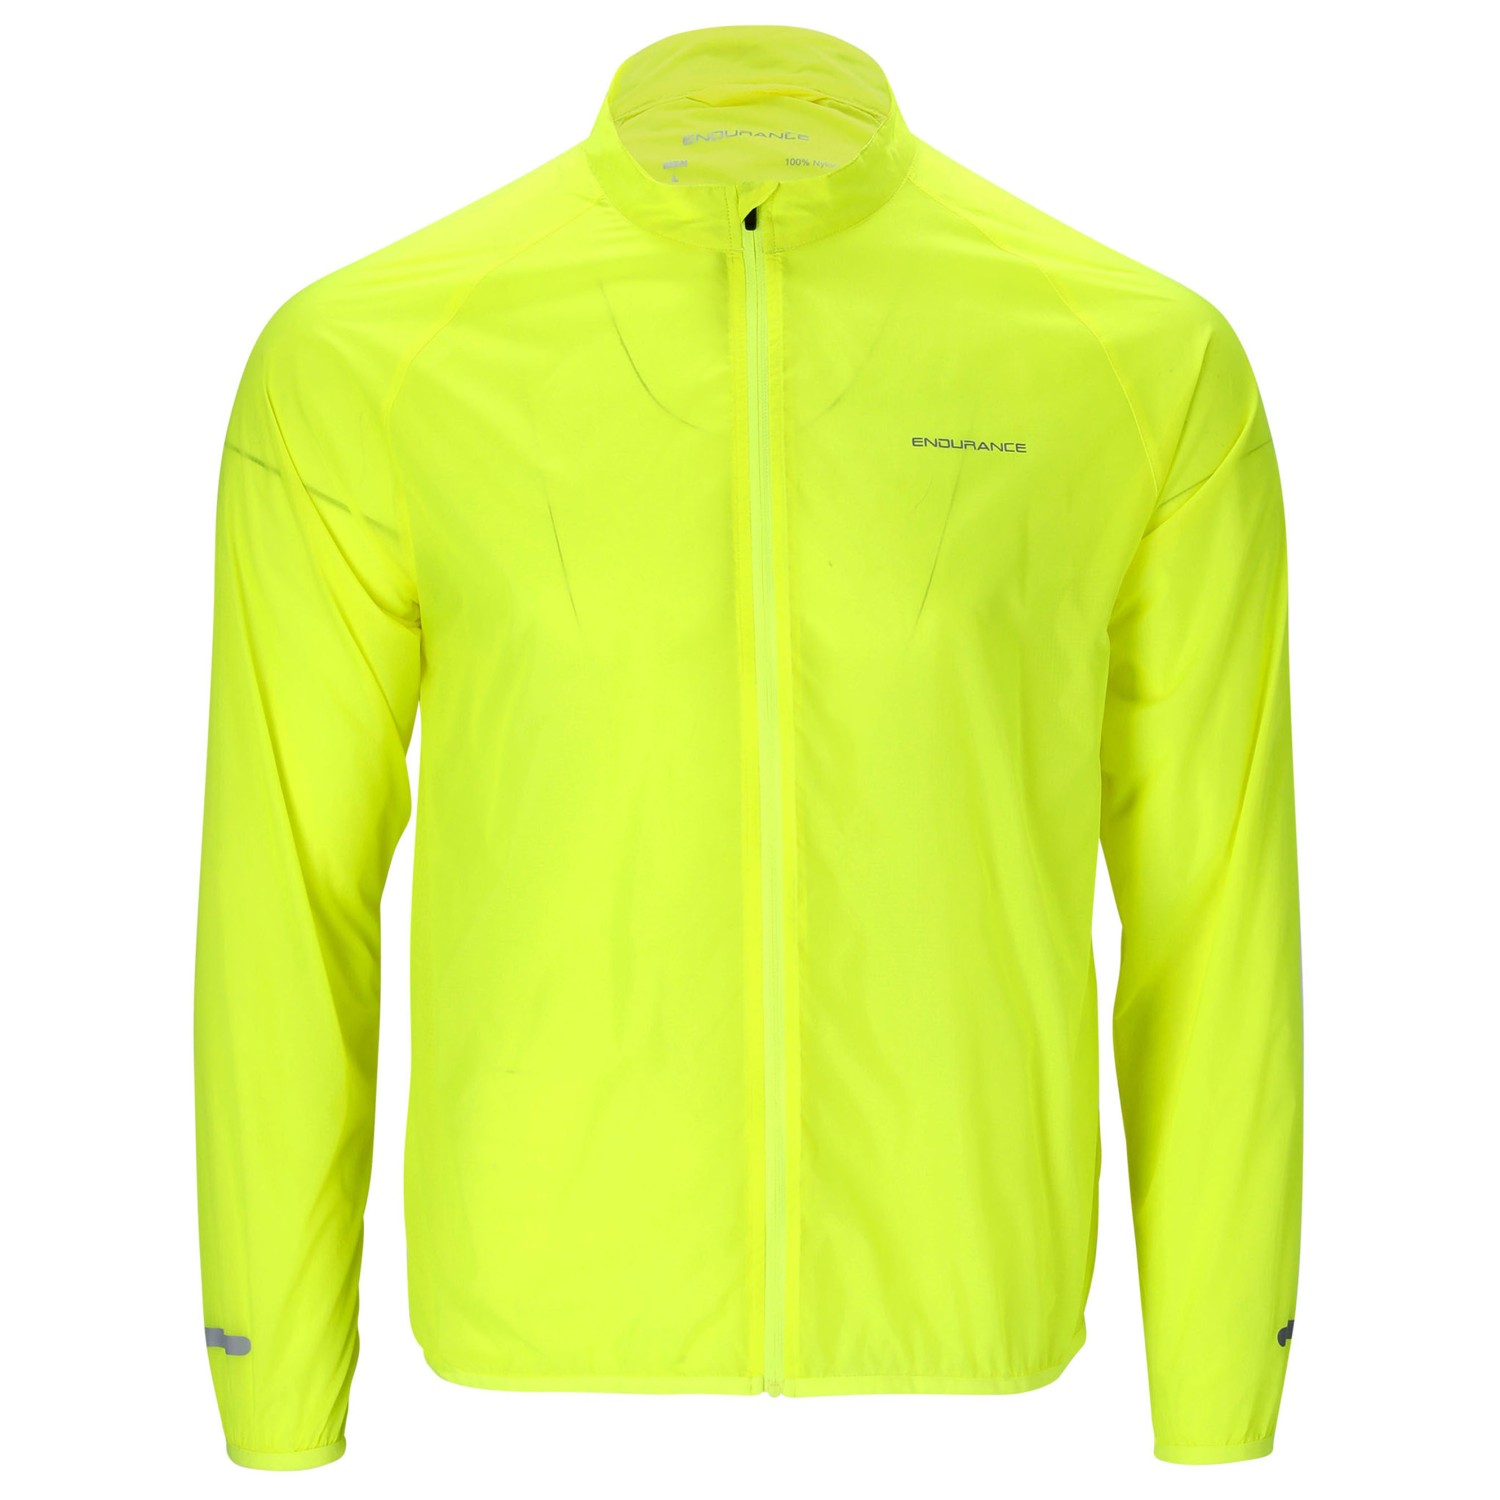 Велосипедная куртка Endurance Imile Packable Cycling/MTB, цвет Safety Yellow защитная куртка nidecker predator safety jacket white red s